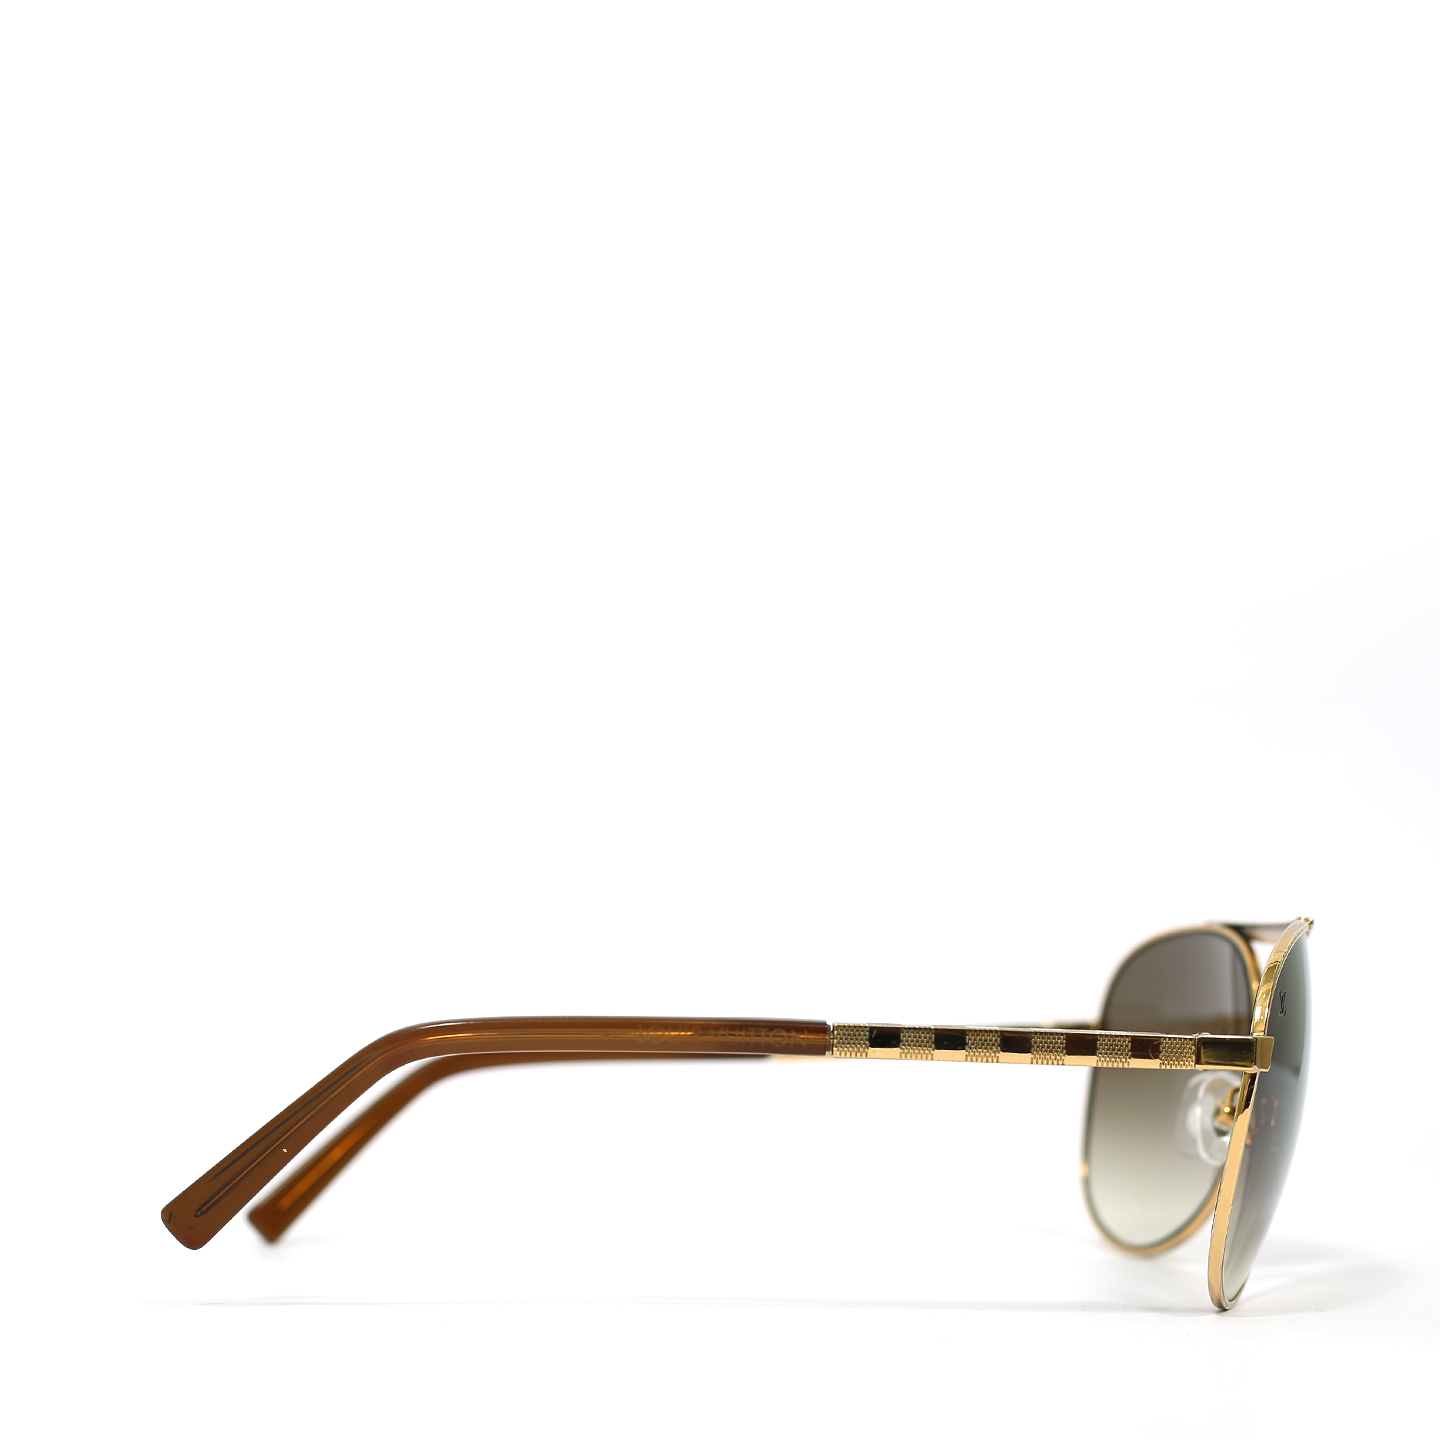 Authentic+Louis+Vuitton+Attitude+Pilote+Sunglasses+Z0339U+Brown+Lenses+Gold  for sale online